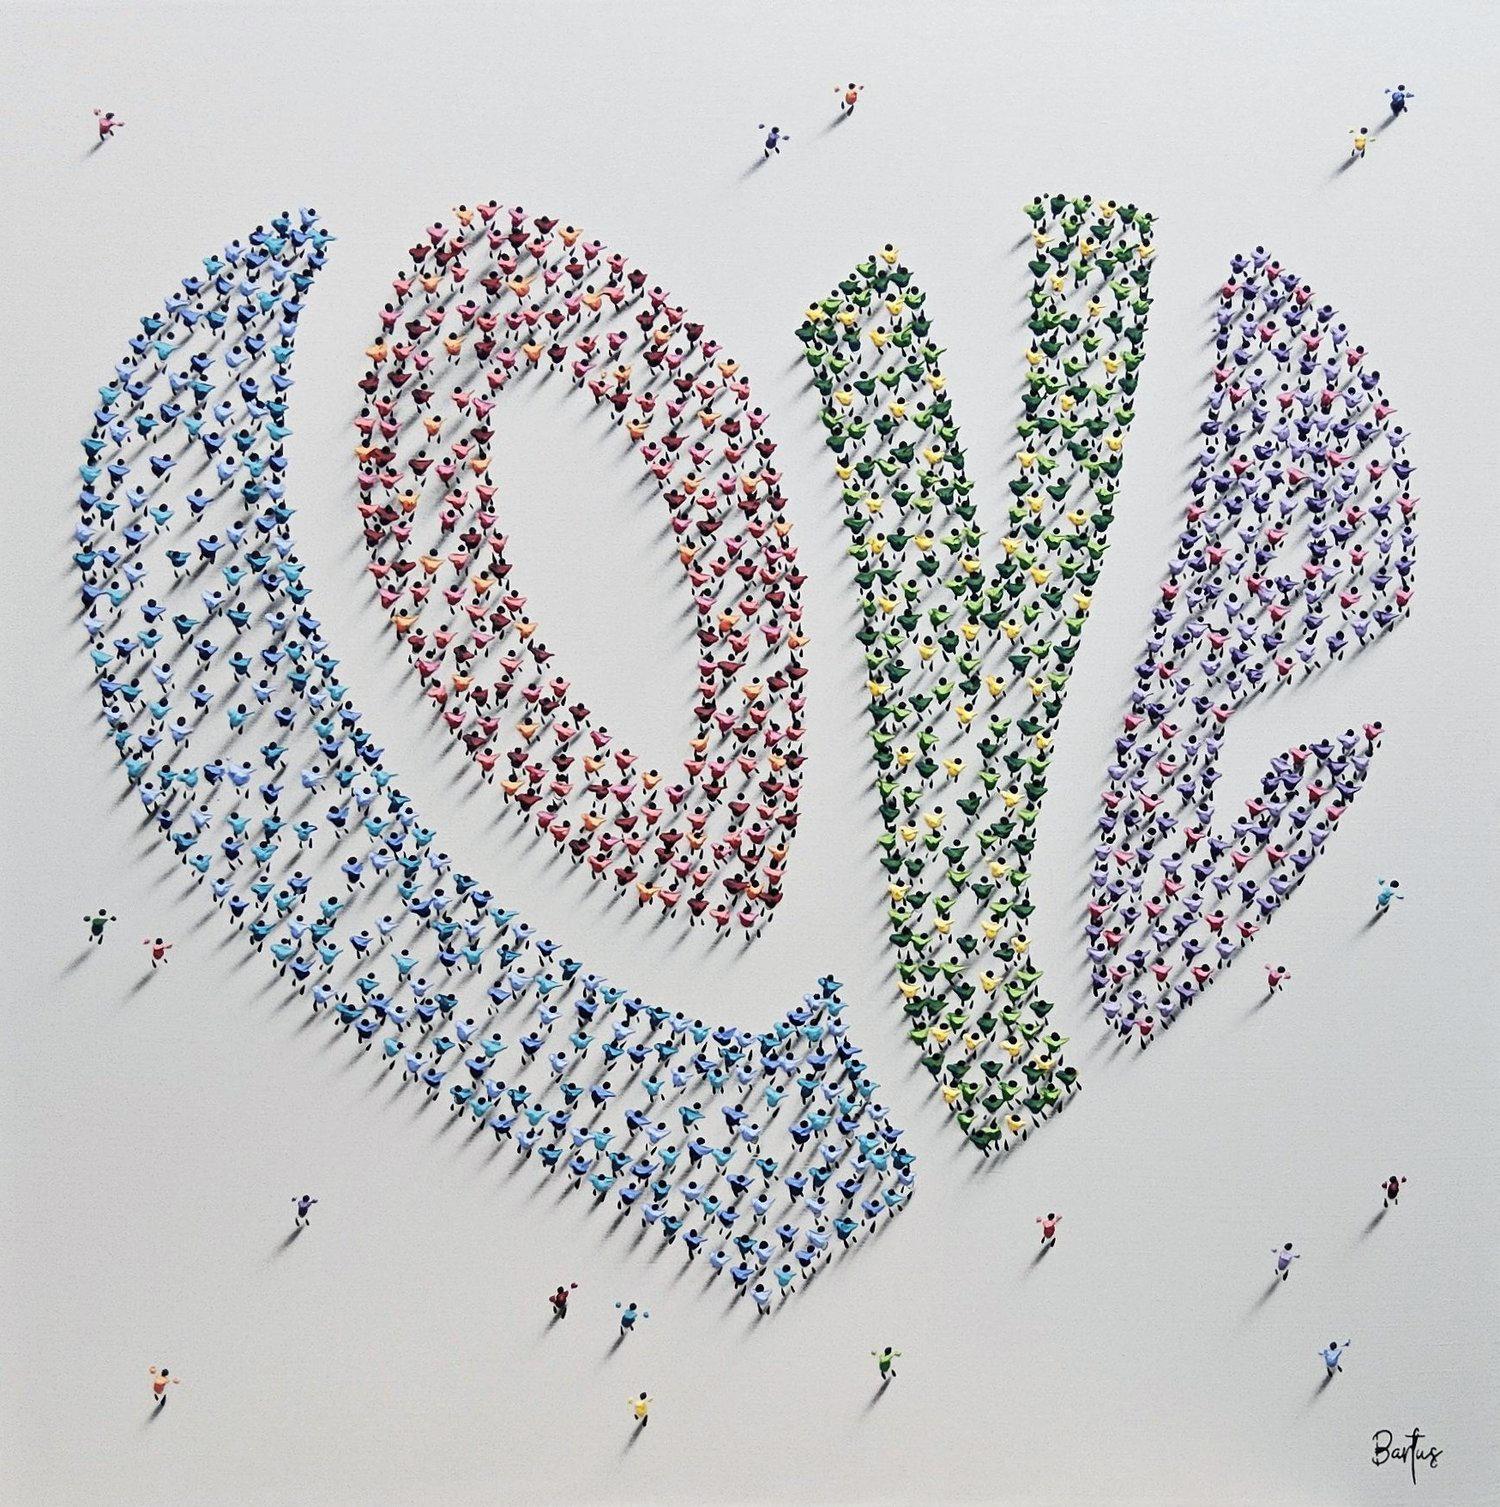 Francisco Bartus, "Heart Full of Love", 39x39, Textured Mixed Media Painting 